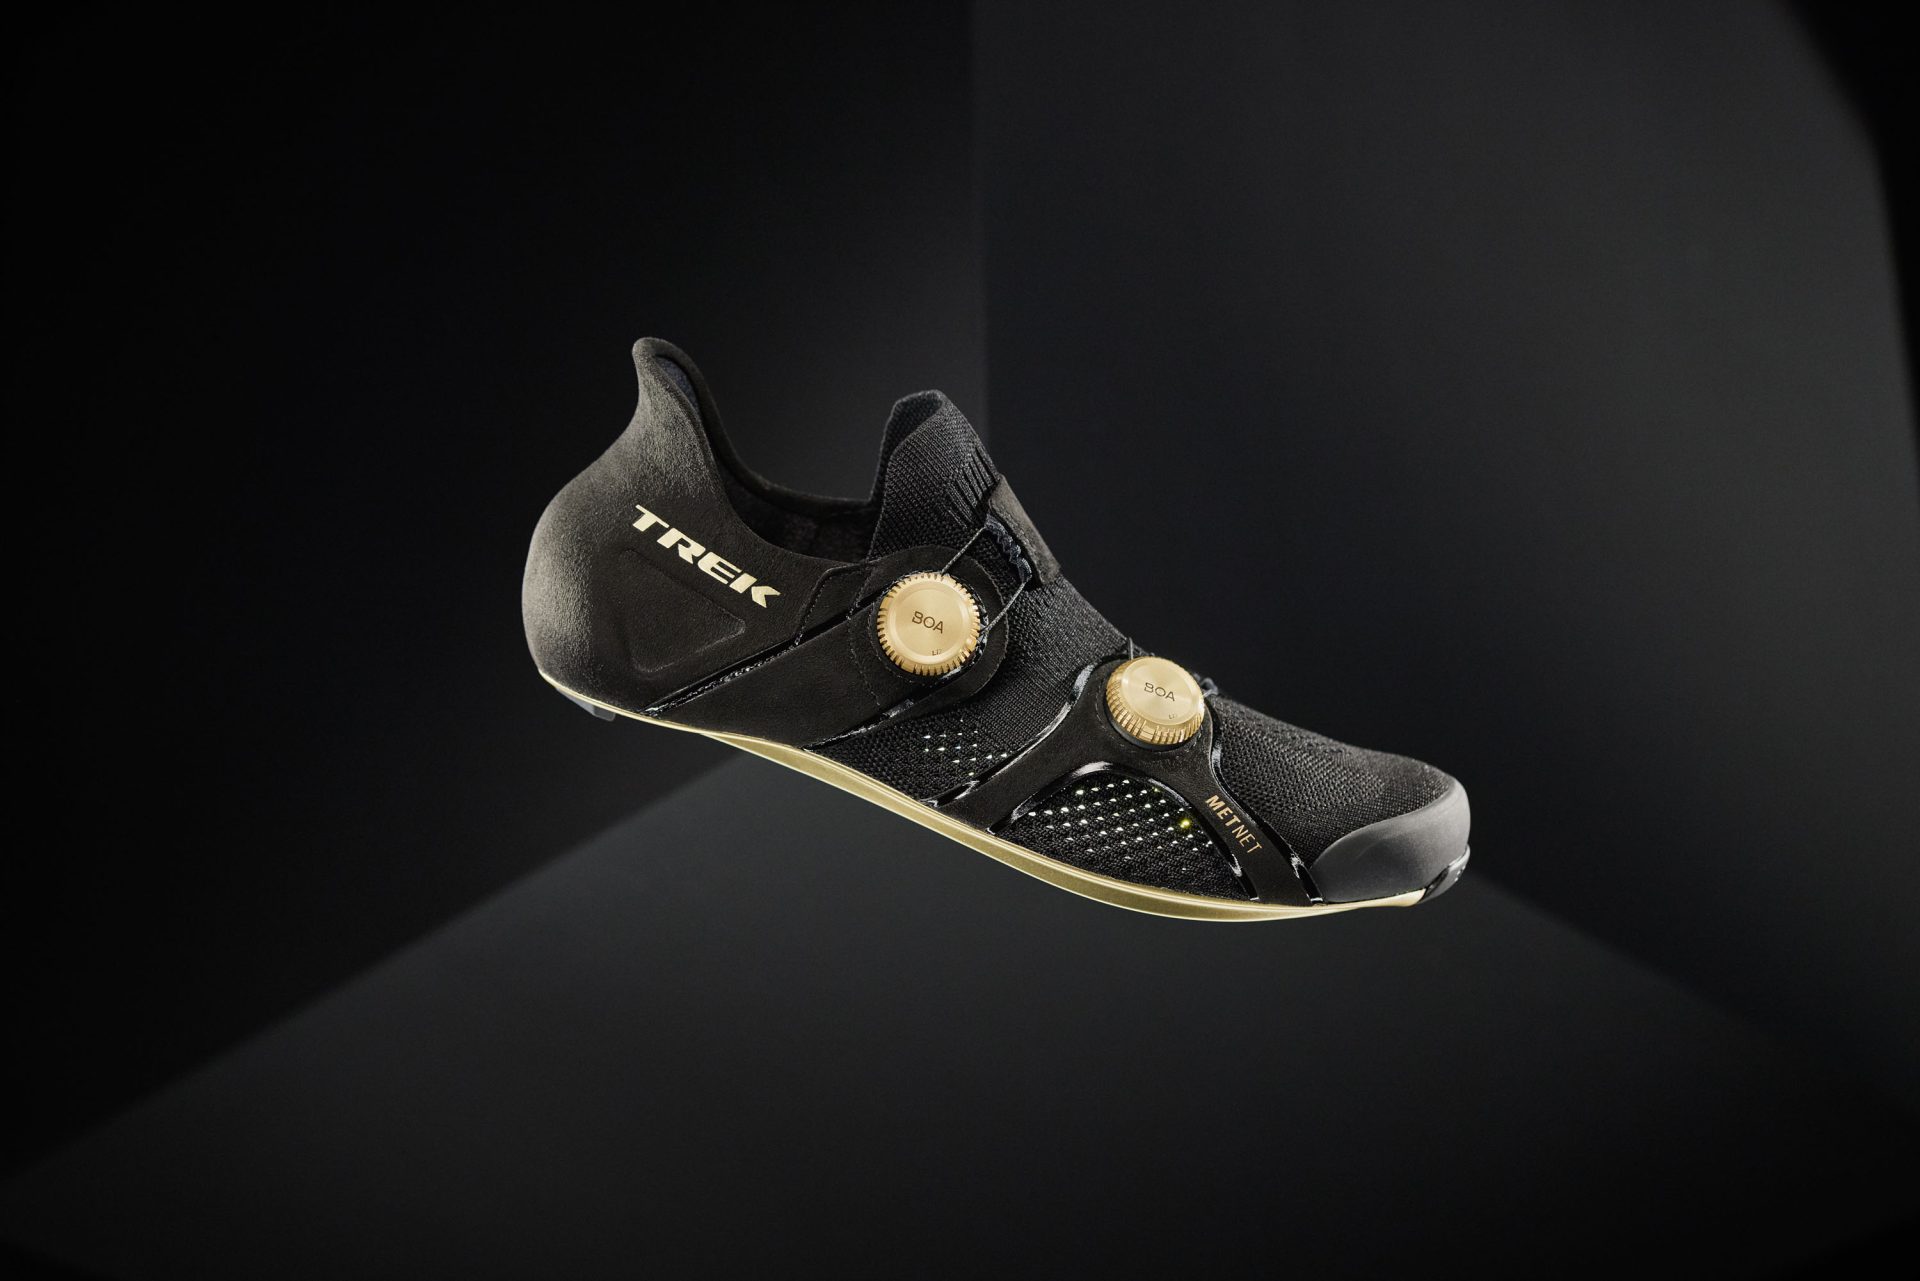 Trek RSL Knit road shoe in black